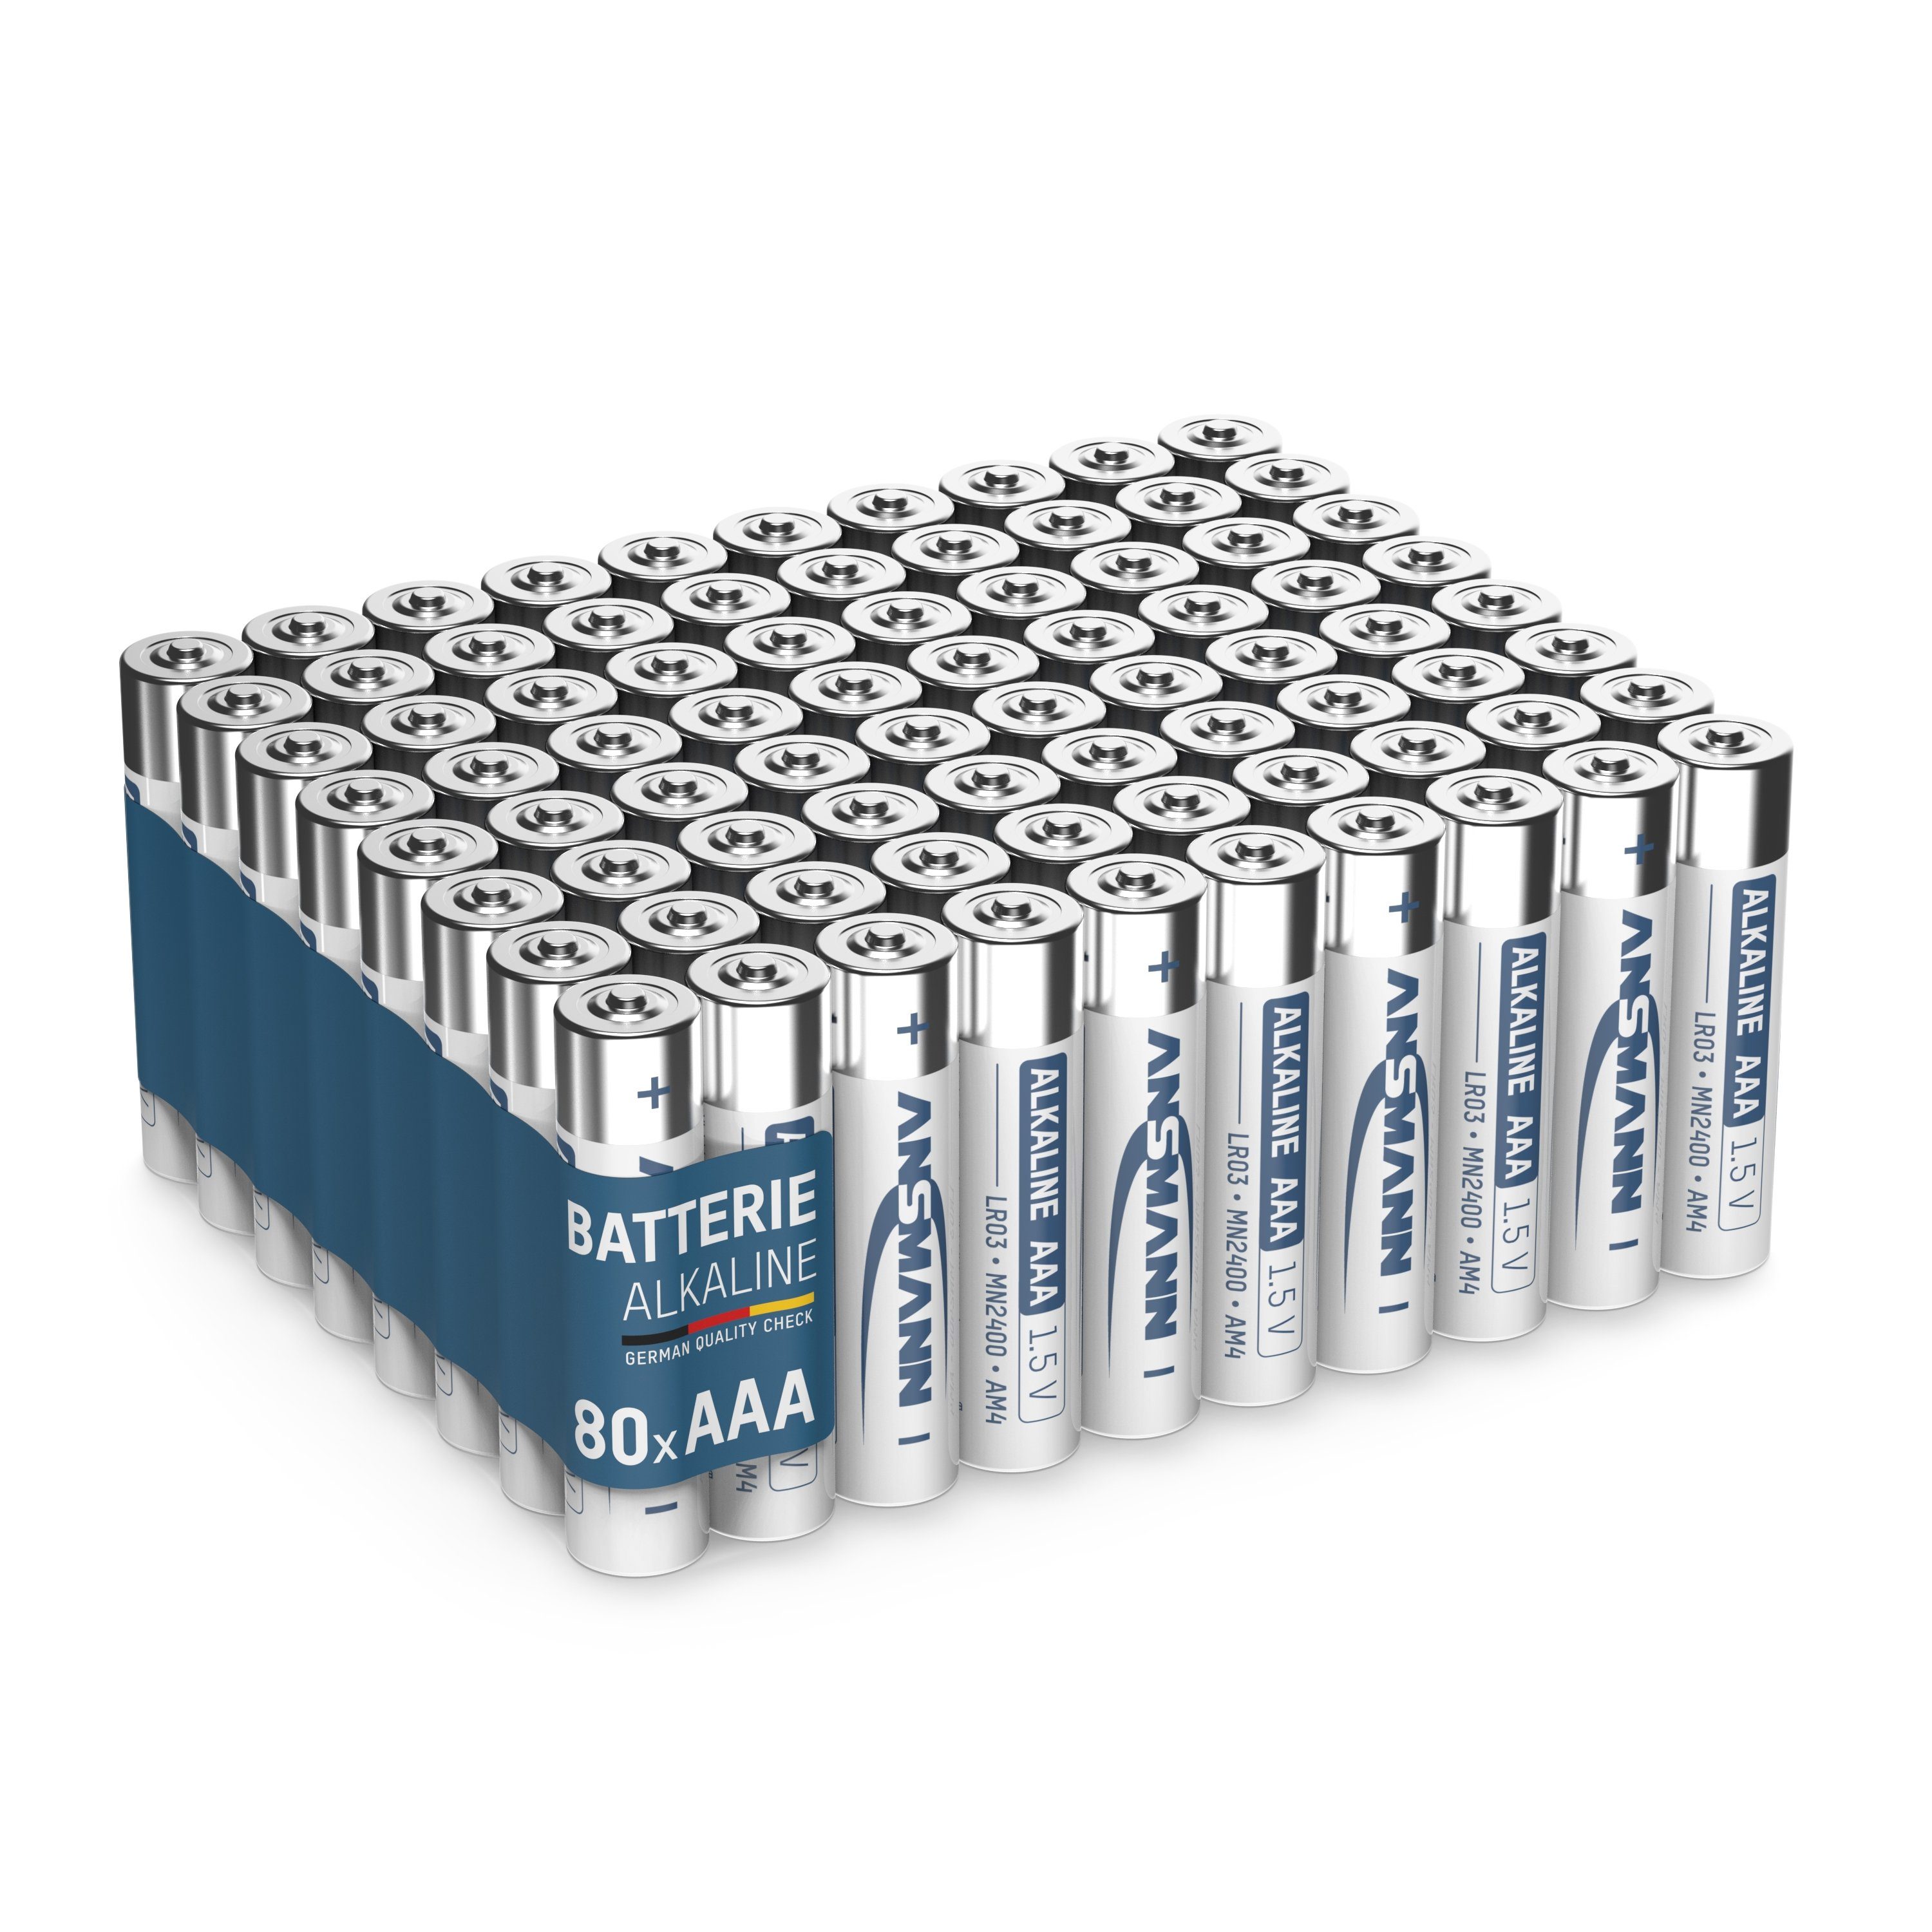 ANSMANN® Batterien AAA Alkaline Größe LR03 - (80 Stück Vorratspack) Batterie | Batterien